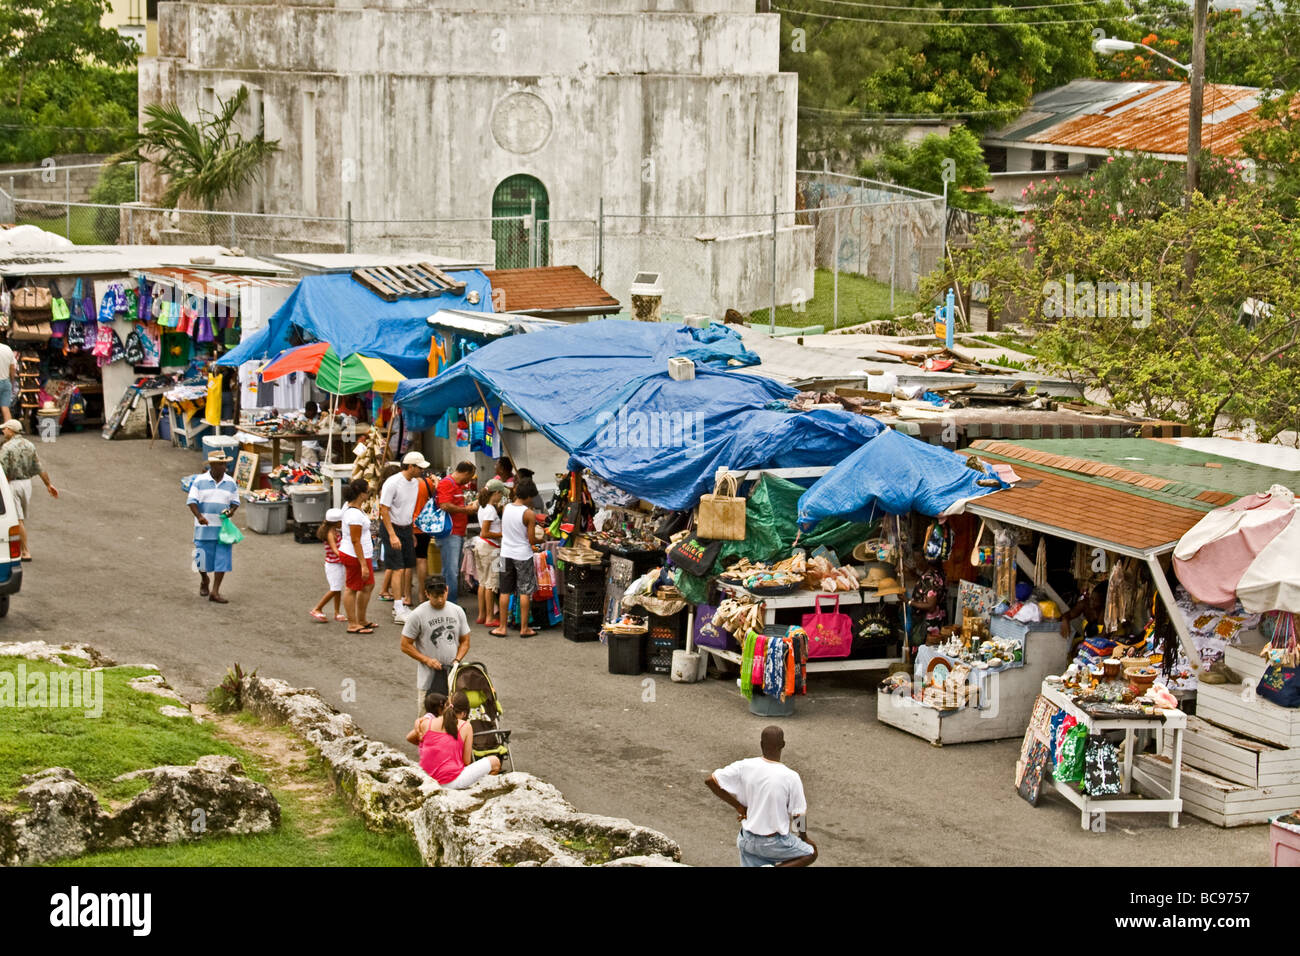 Outdoor-Markt durch eine Touristenattraktion am Wasserturm in Nassau, Bahamas Stockfoto